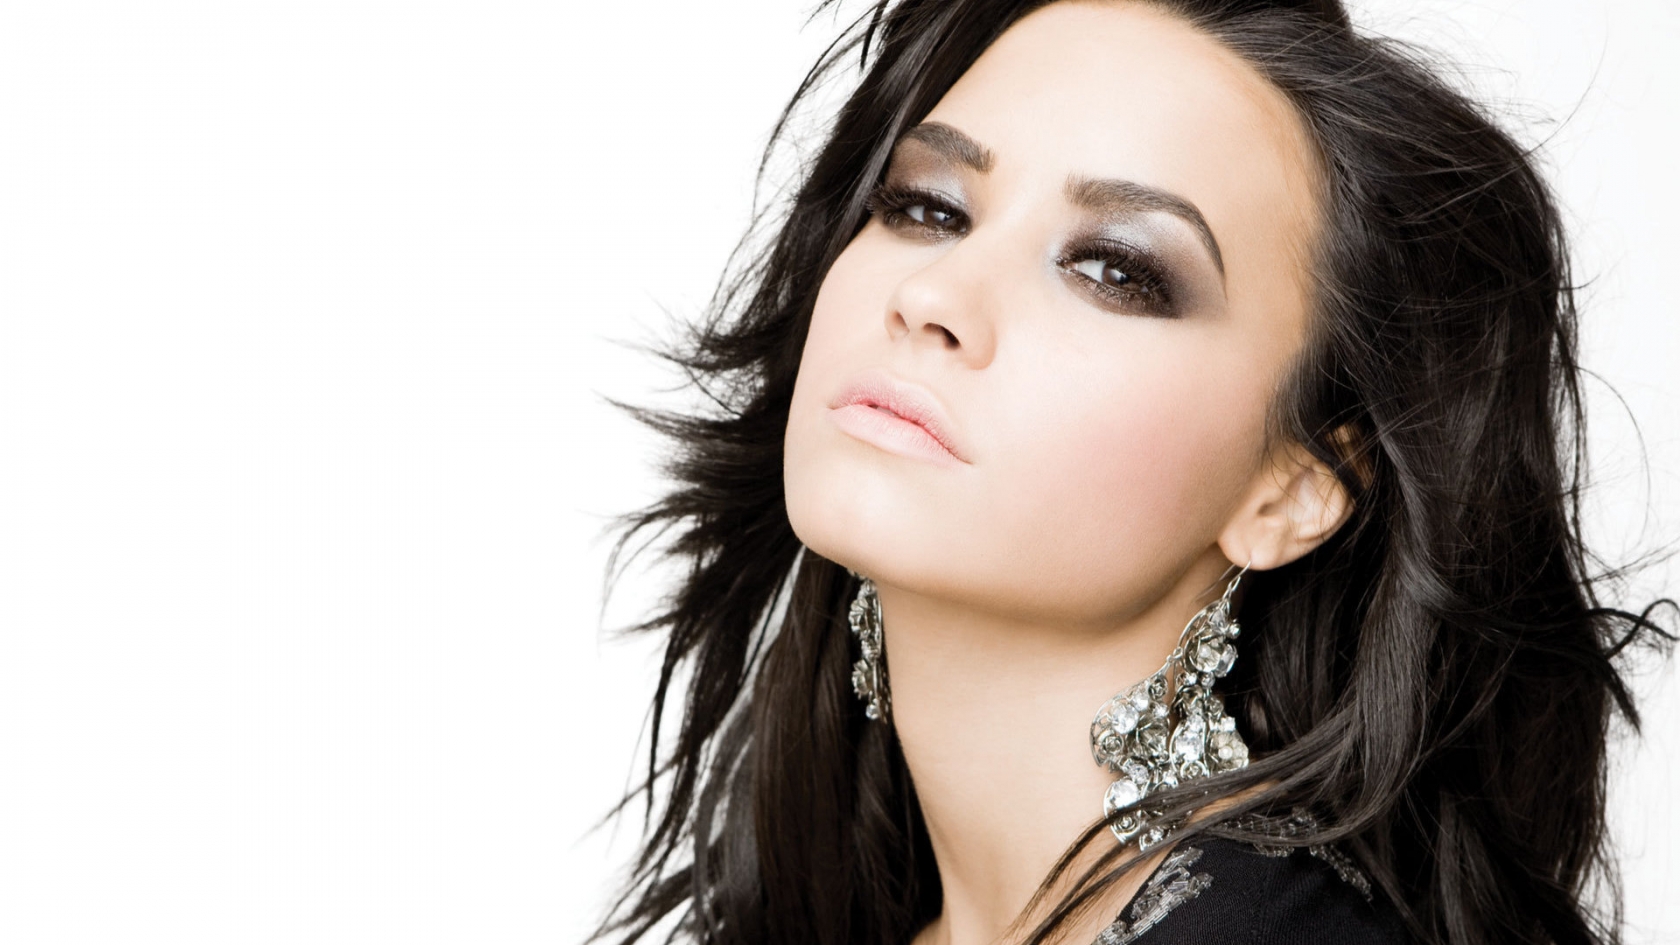 Demi Lovato Beautiful for 1680 x 945 HDTV resolution